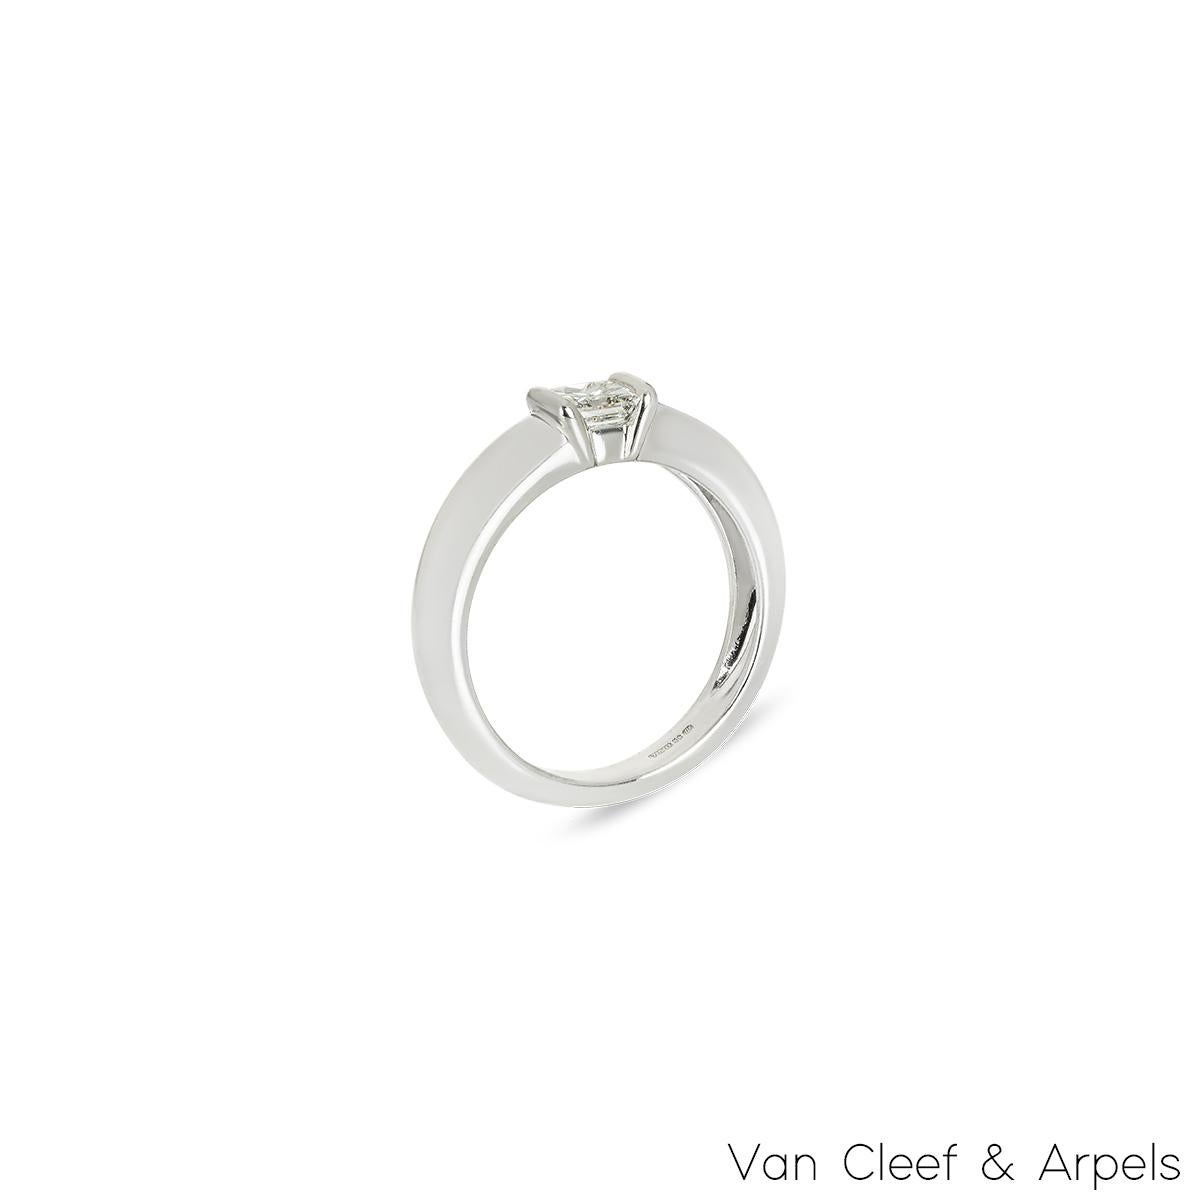 Ein wunderschöner Verlobungsring aus 18 Karat Weißgold von Van Cleef & Arpels aus der Kollektion Bridal. Der Ring besteht aus einem Diamanten im Prinzessschliff in einer Spannfassung mit einem Gesamtgewicht von 0,24 ct, Farbe E und Reinheit VVS+.